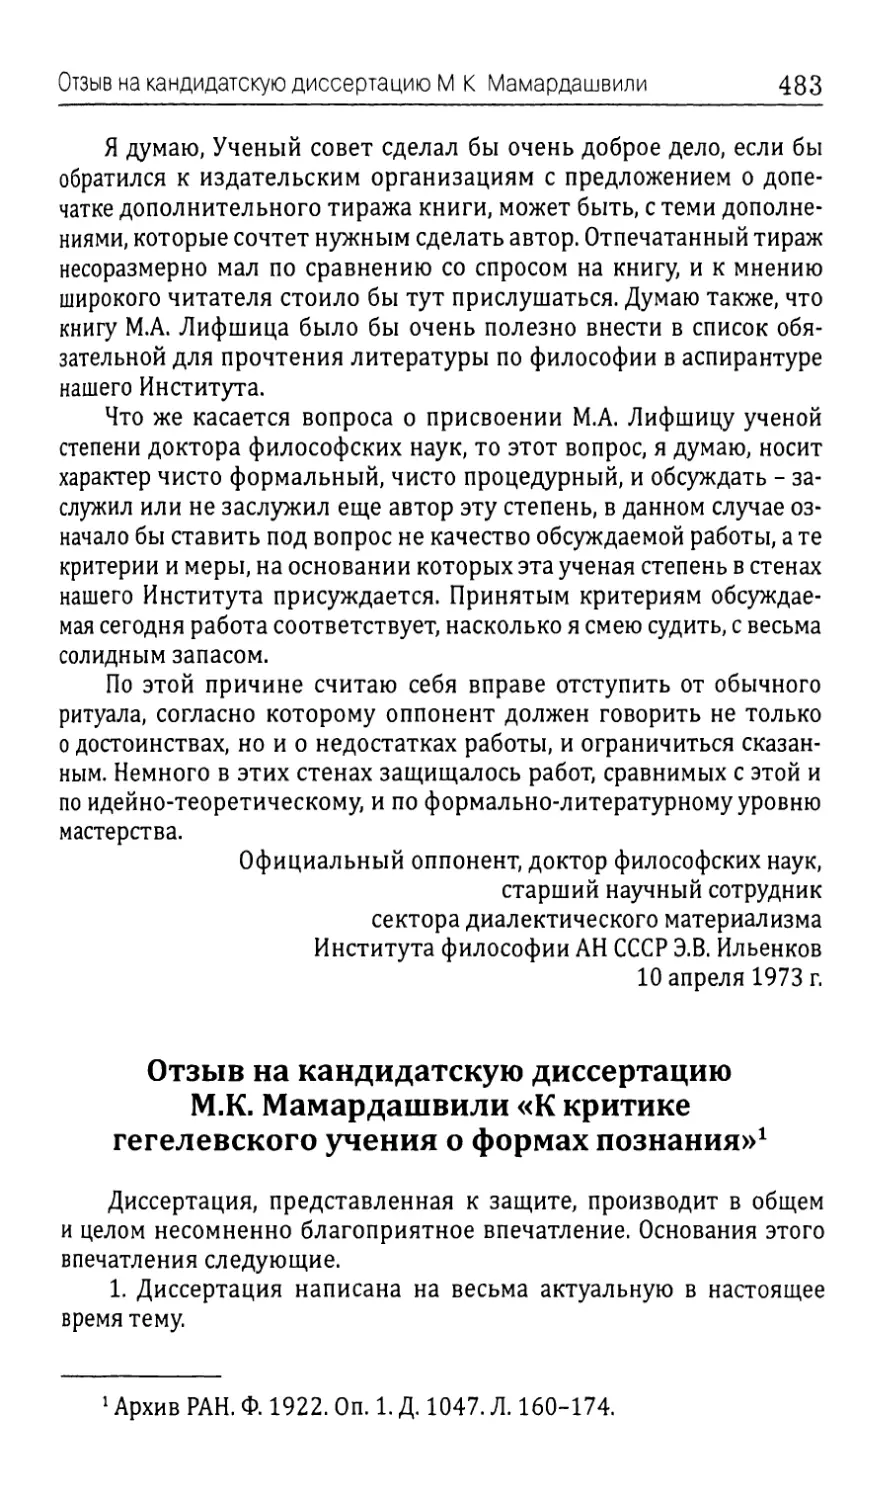 Отзыв на кандидатскую диссертацию М.К. Мамардашвили «К критике гегелевского учения о формах познания»